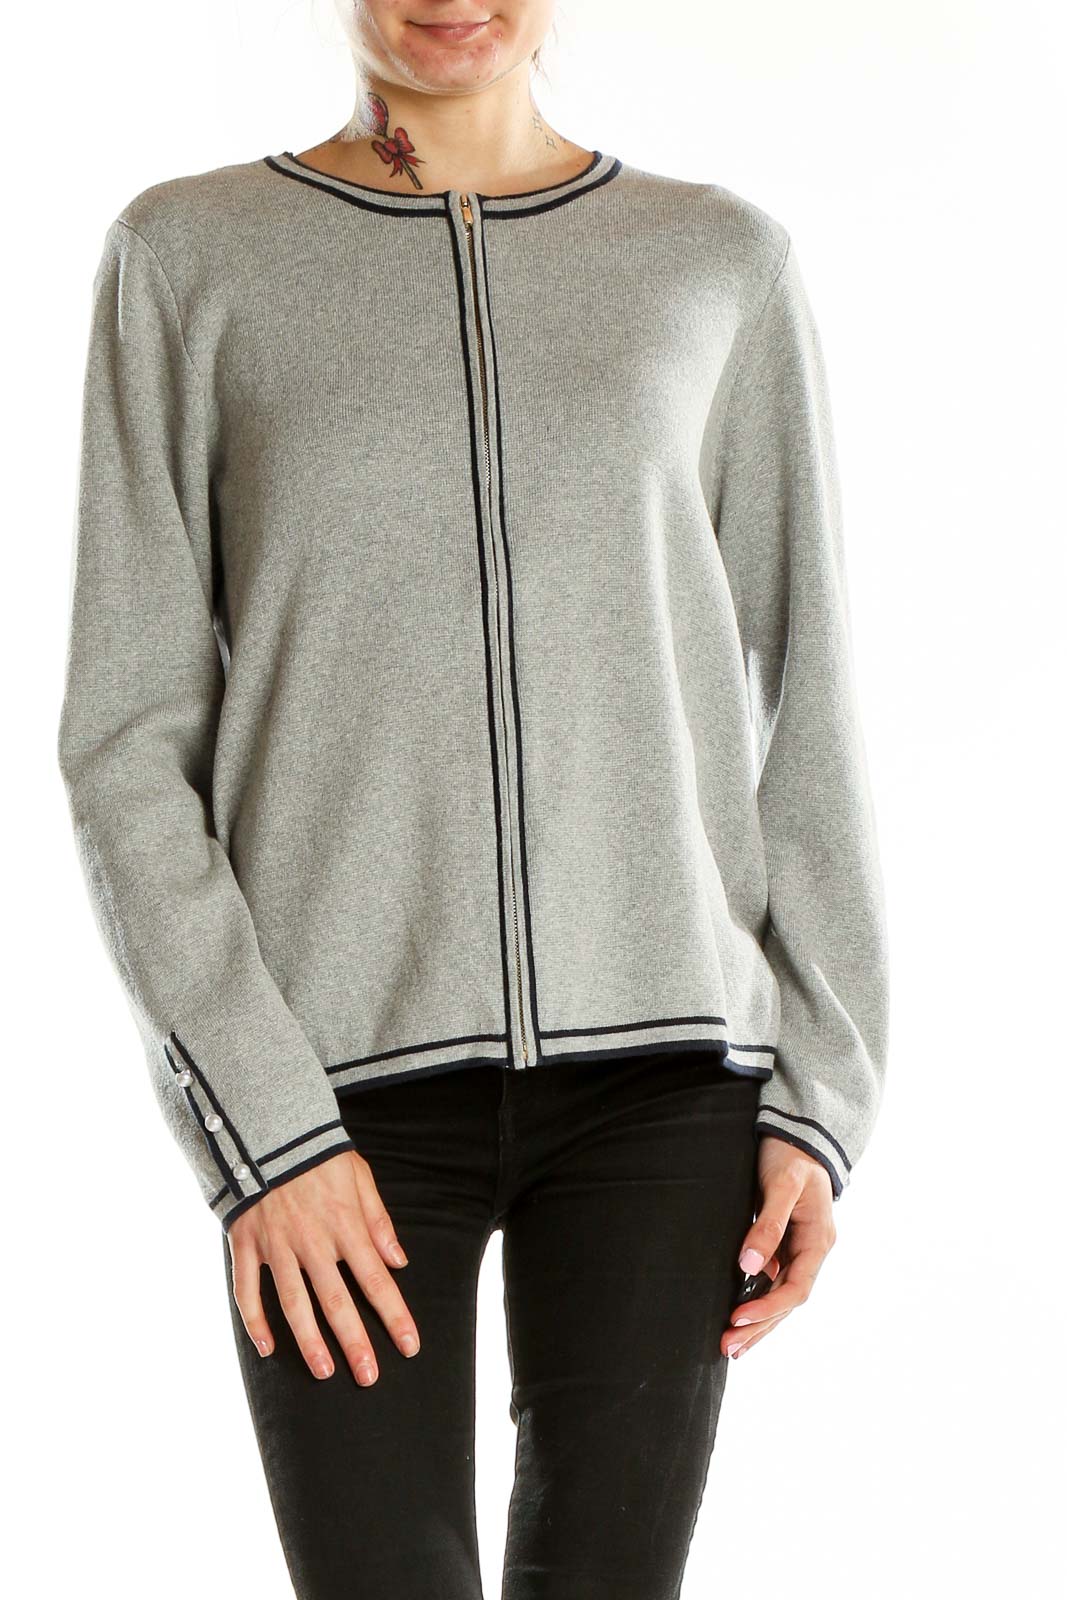 Grey Zip Up Sweater Front